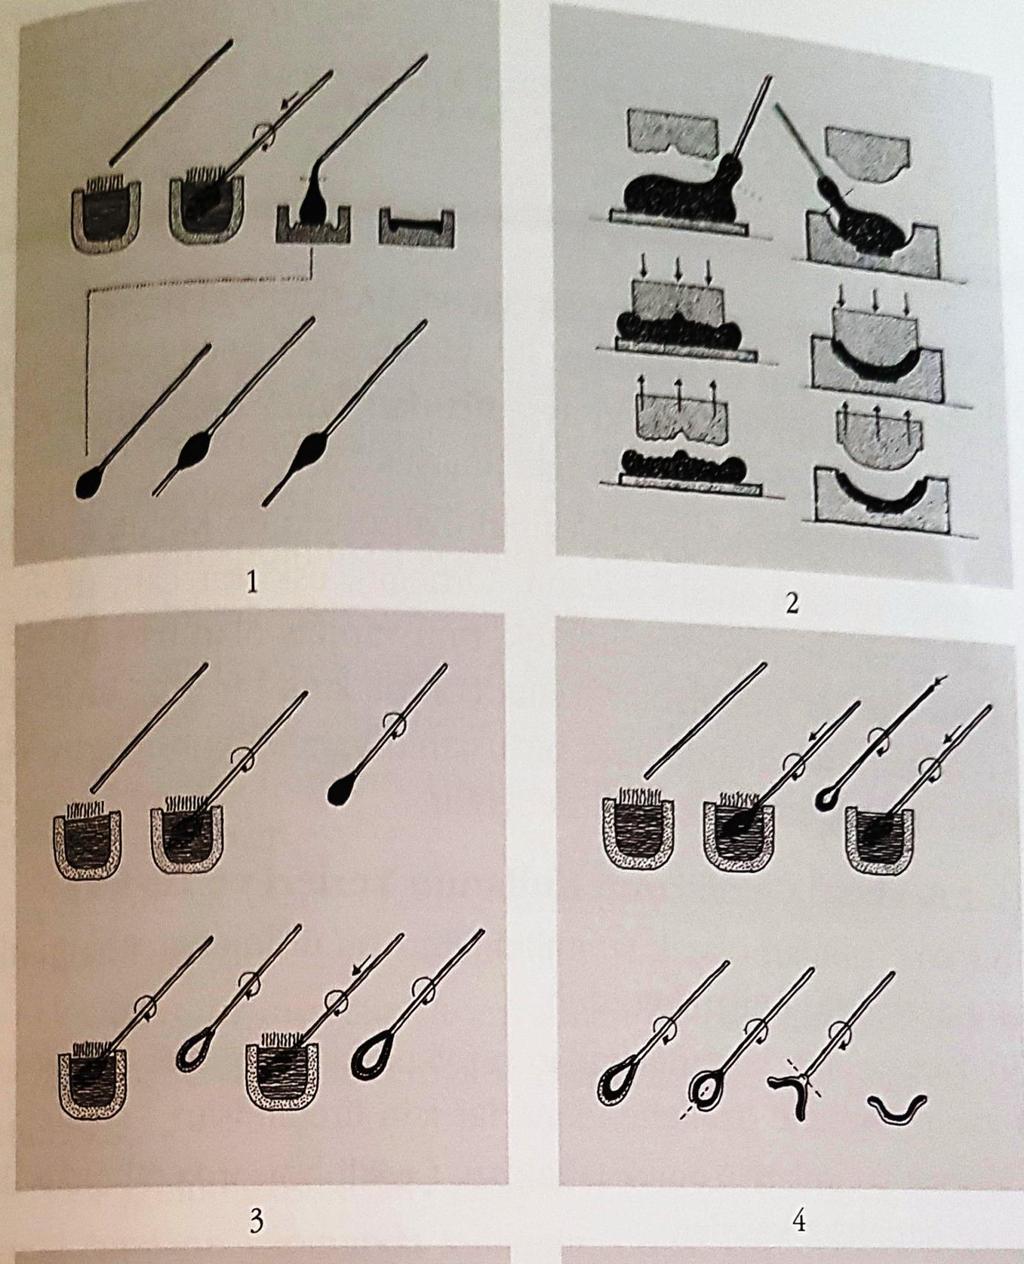 Resim 4.3. Anadolu camcılığında kullanılan teknikler (Küçükerman, 2002, s.